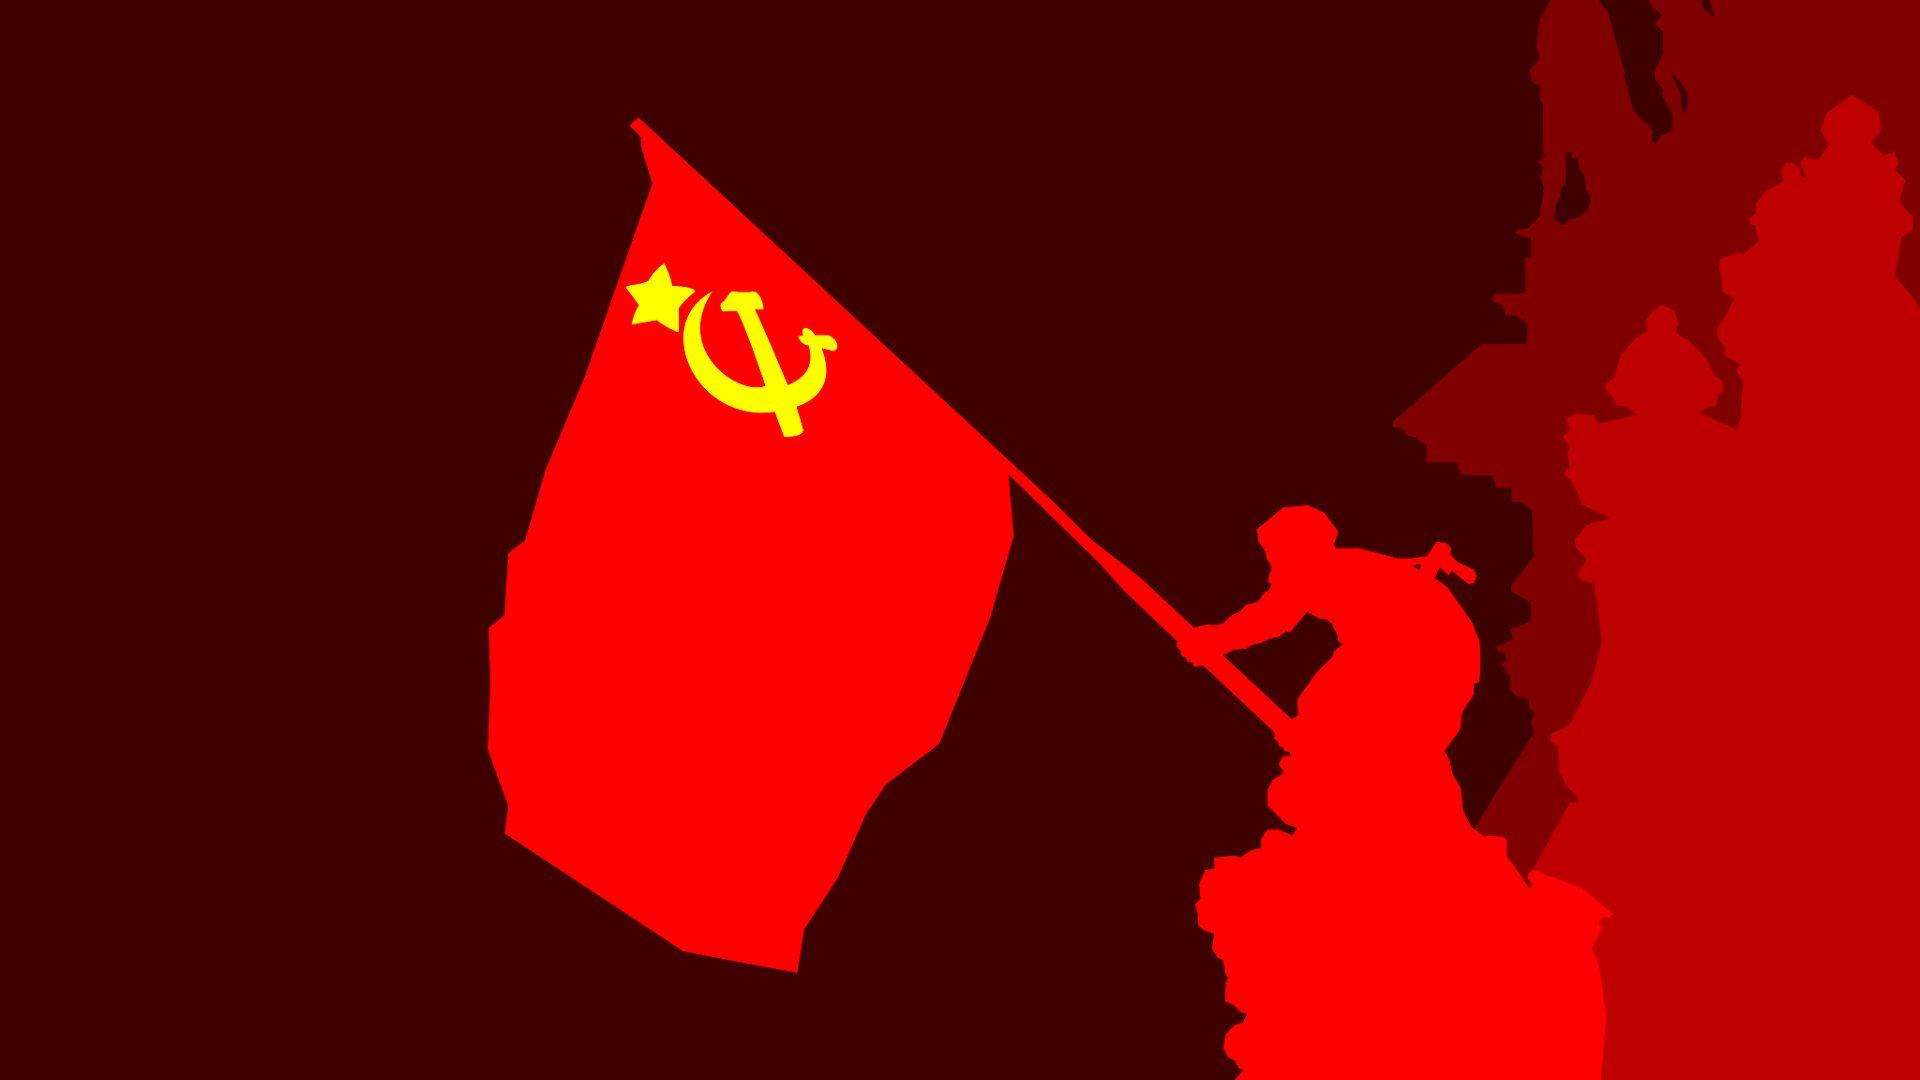 12 Sfi ideas | communist quotes, communism, malayalam quotes